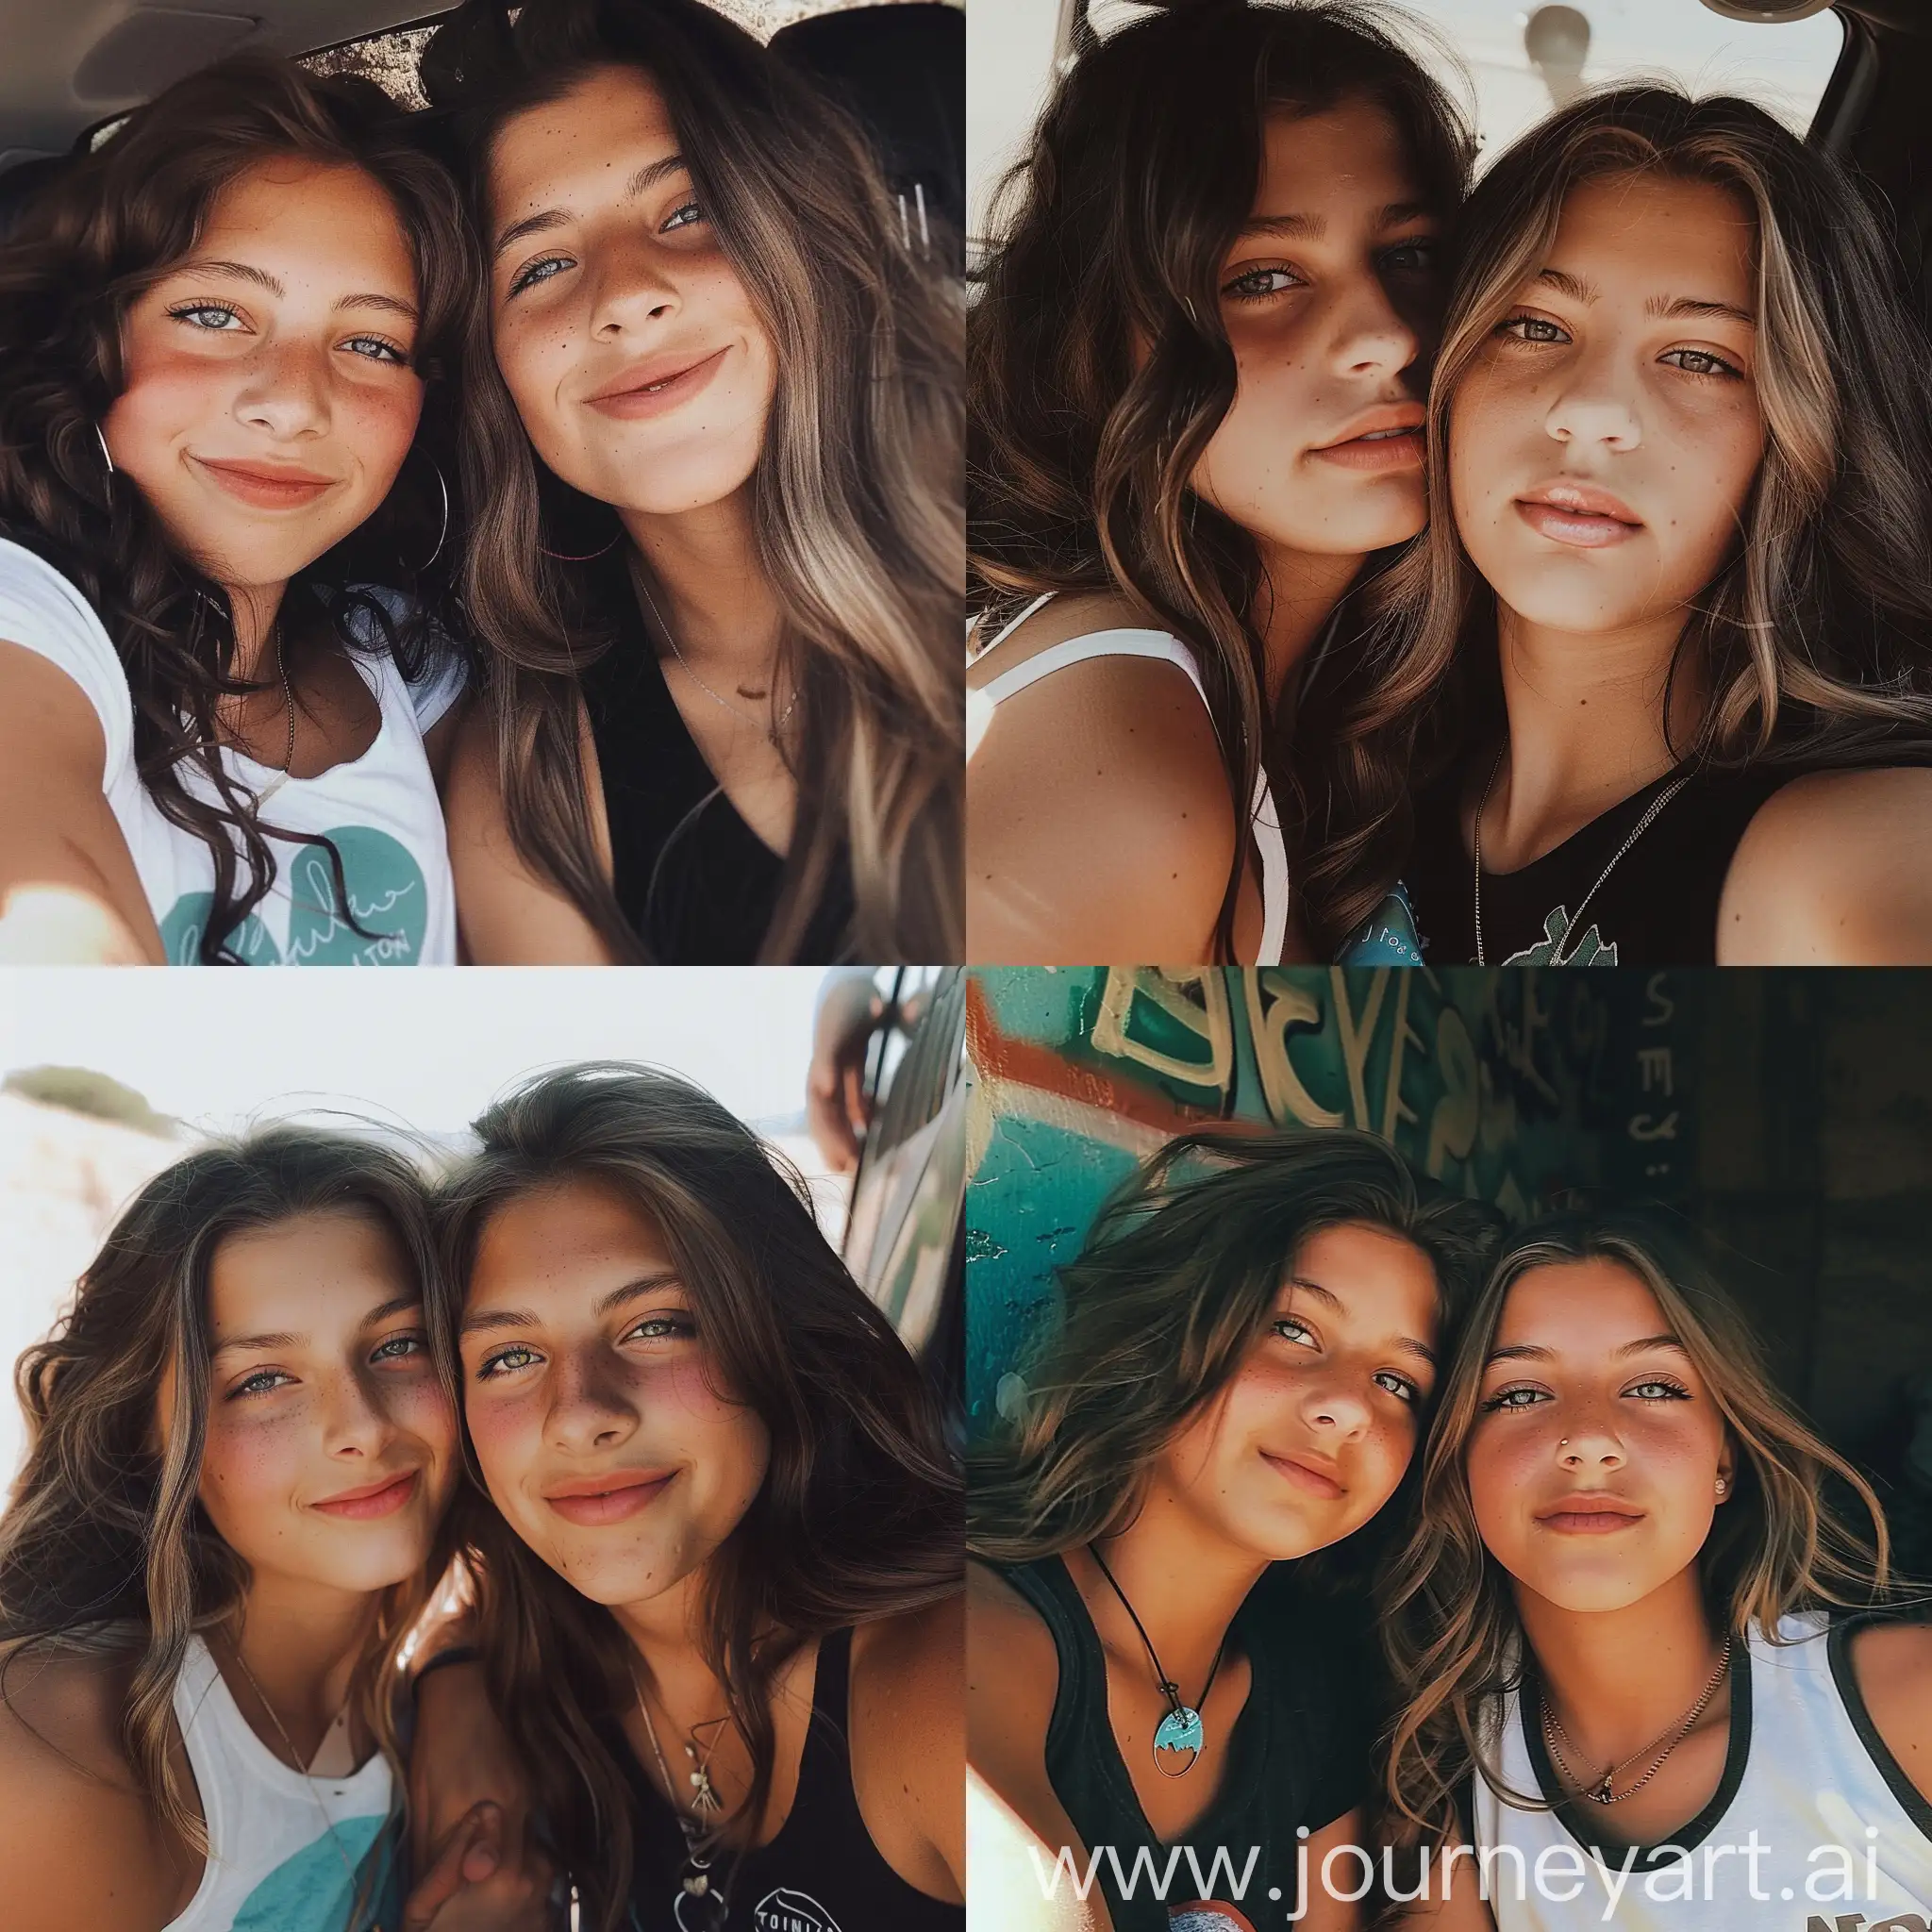 Aesthetic Instagram selfie of two girls, VSCO style